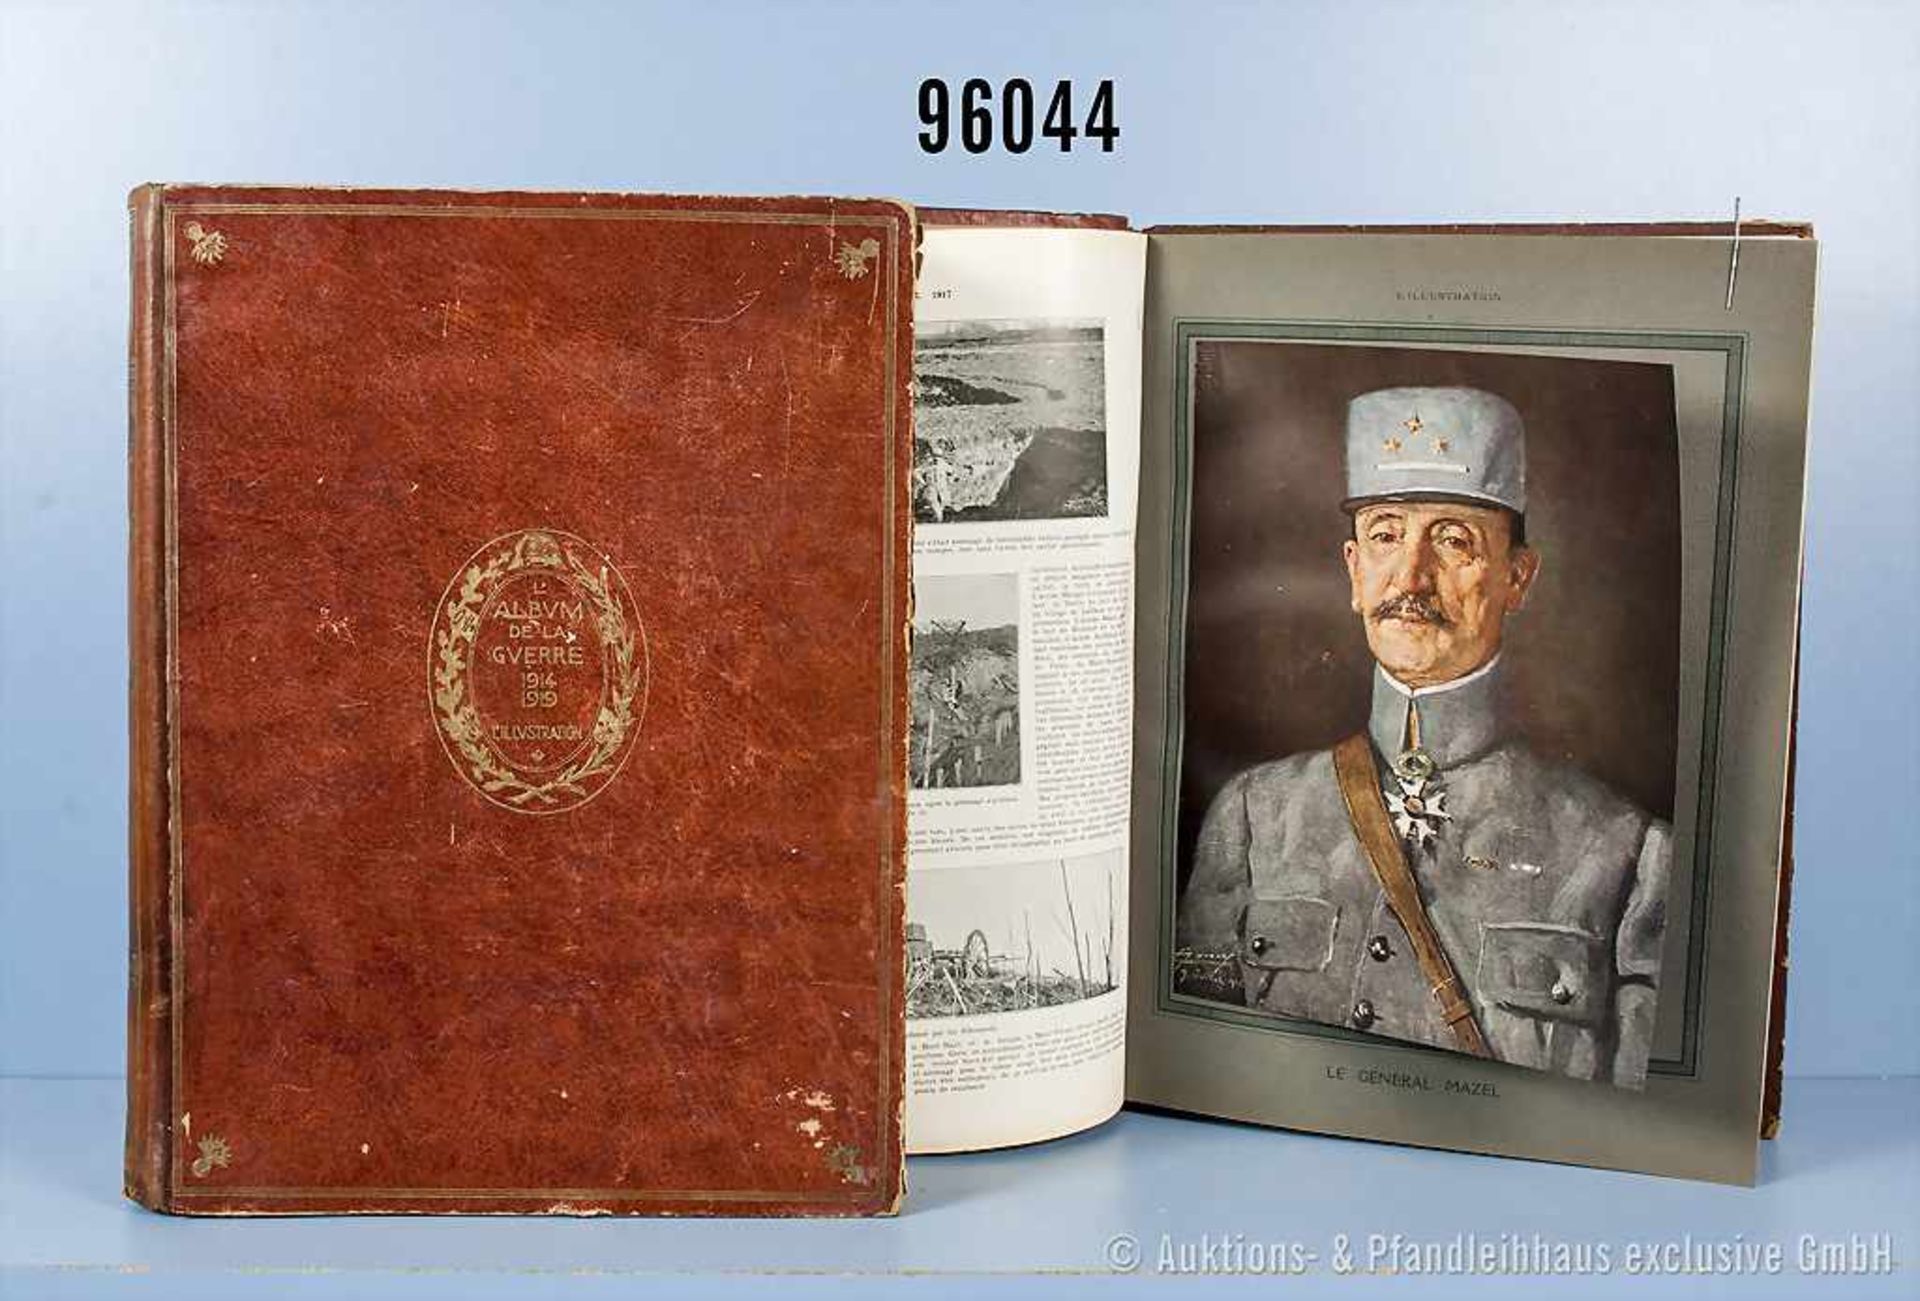 2 großformatige Bände, Halblederausf., "Album de la Guerre 1914-1919 L'Ilustration" Bd. 1 und 2,